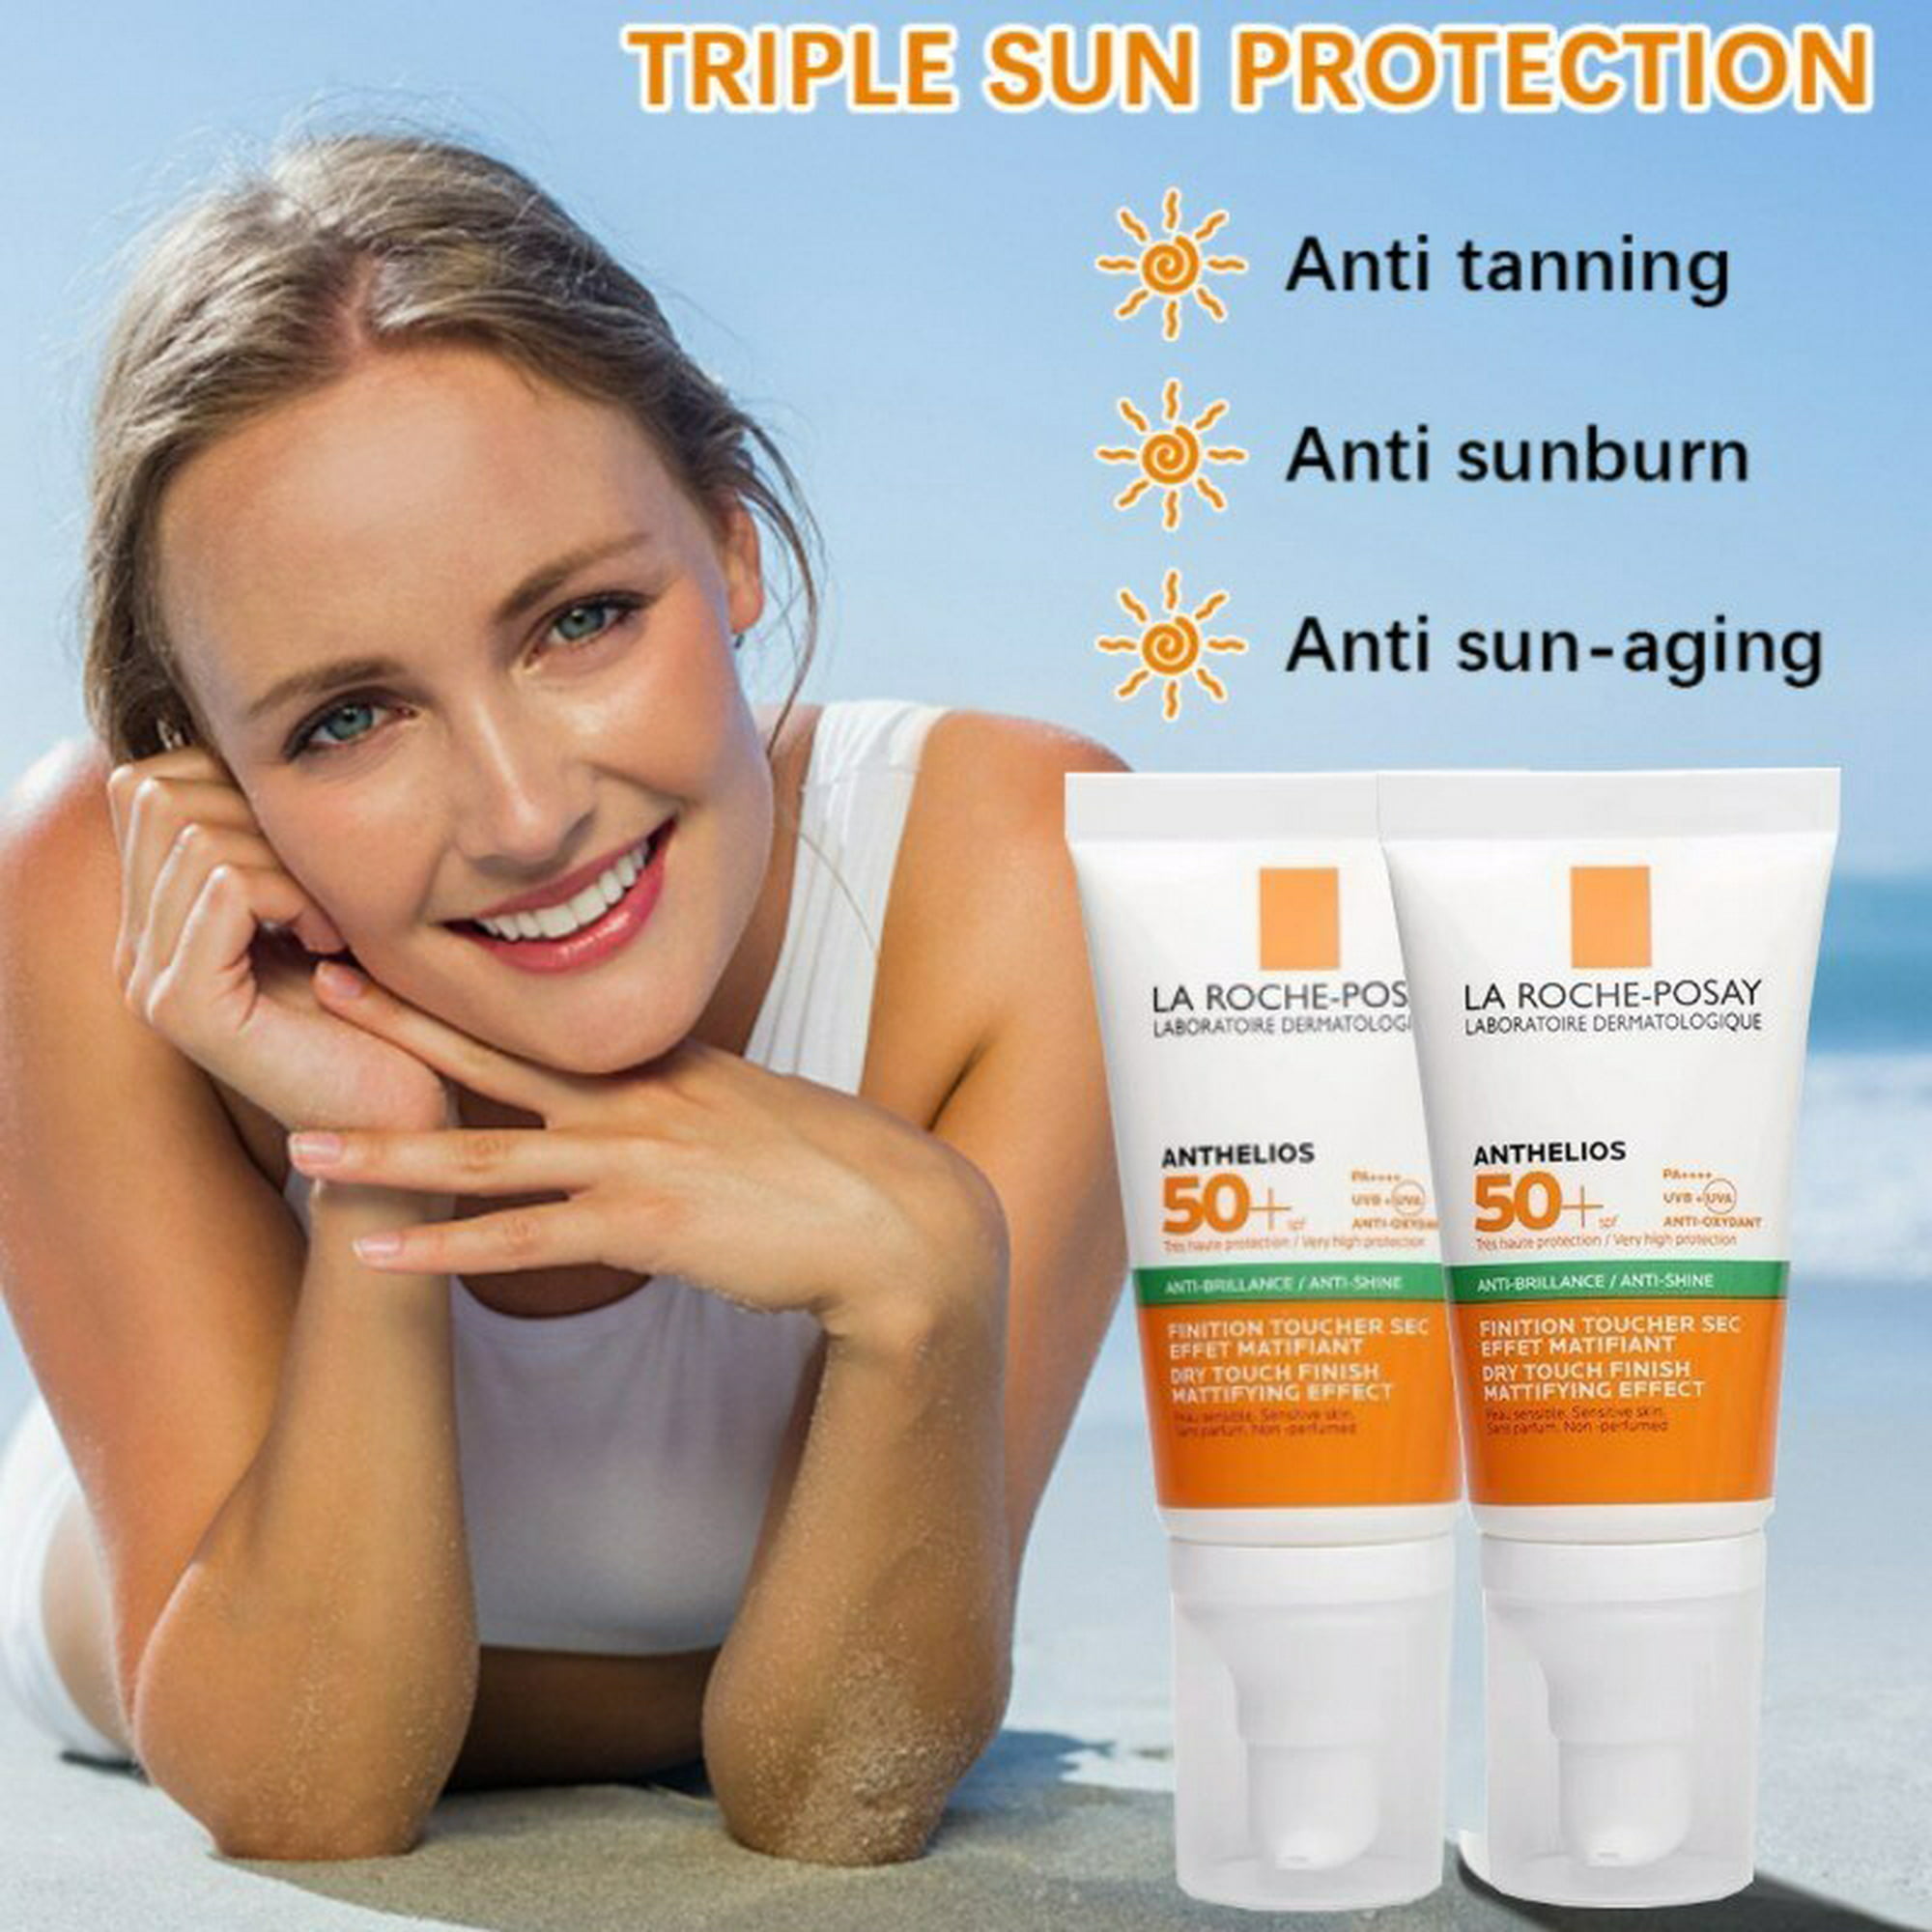 La Roche Posay protector solar SPF50 +, Control de aceite, protección Uv  ligera y no grasa, protector solar facial para piel grasa, antibrillo  Fivean unisex